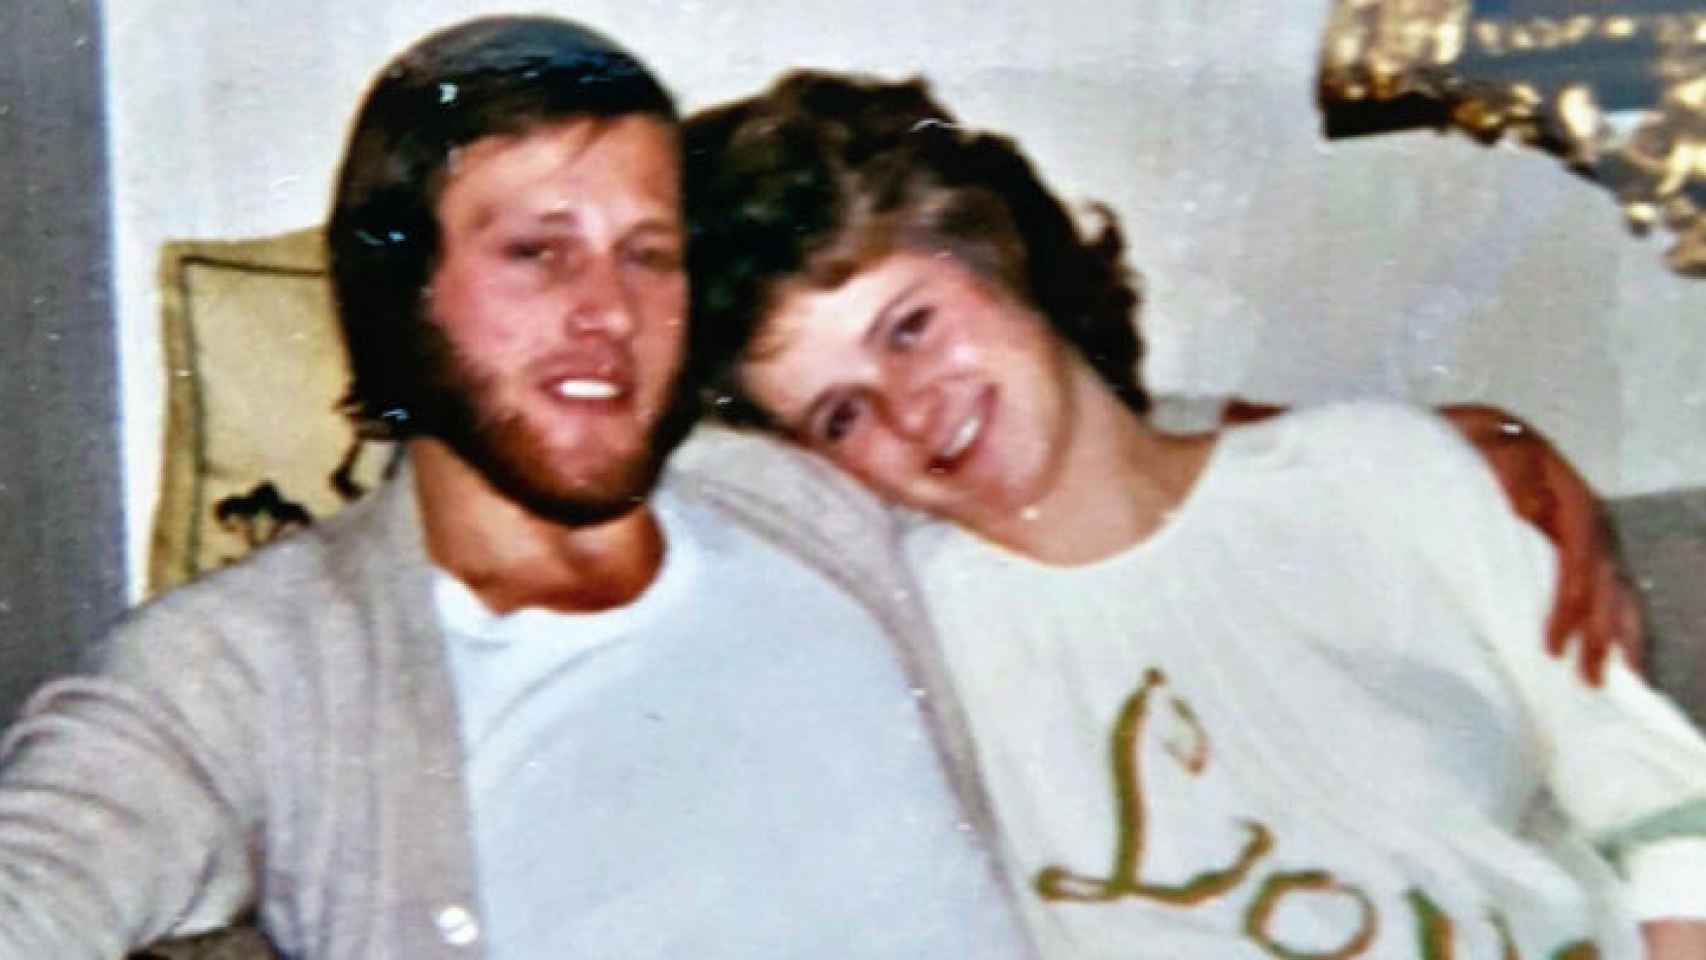 Tom y Anne-Elisabeth llevaban 49 años casados cuando ella desapareció.